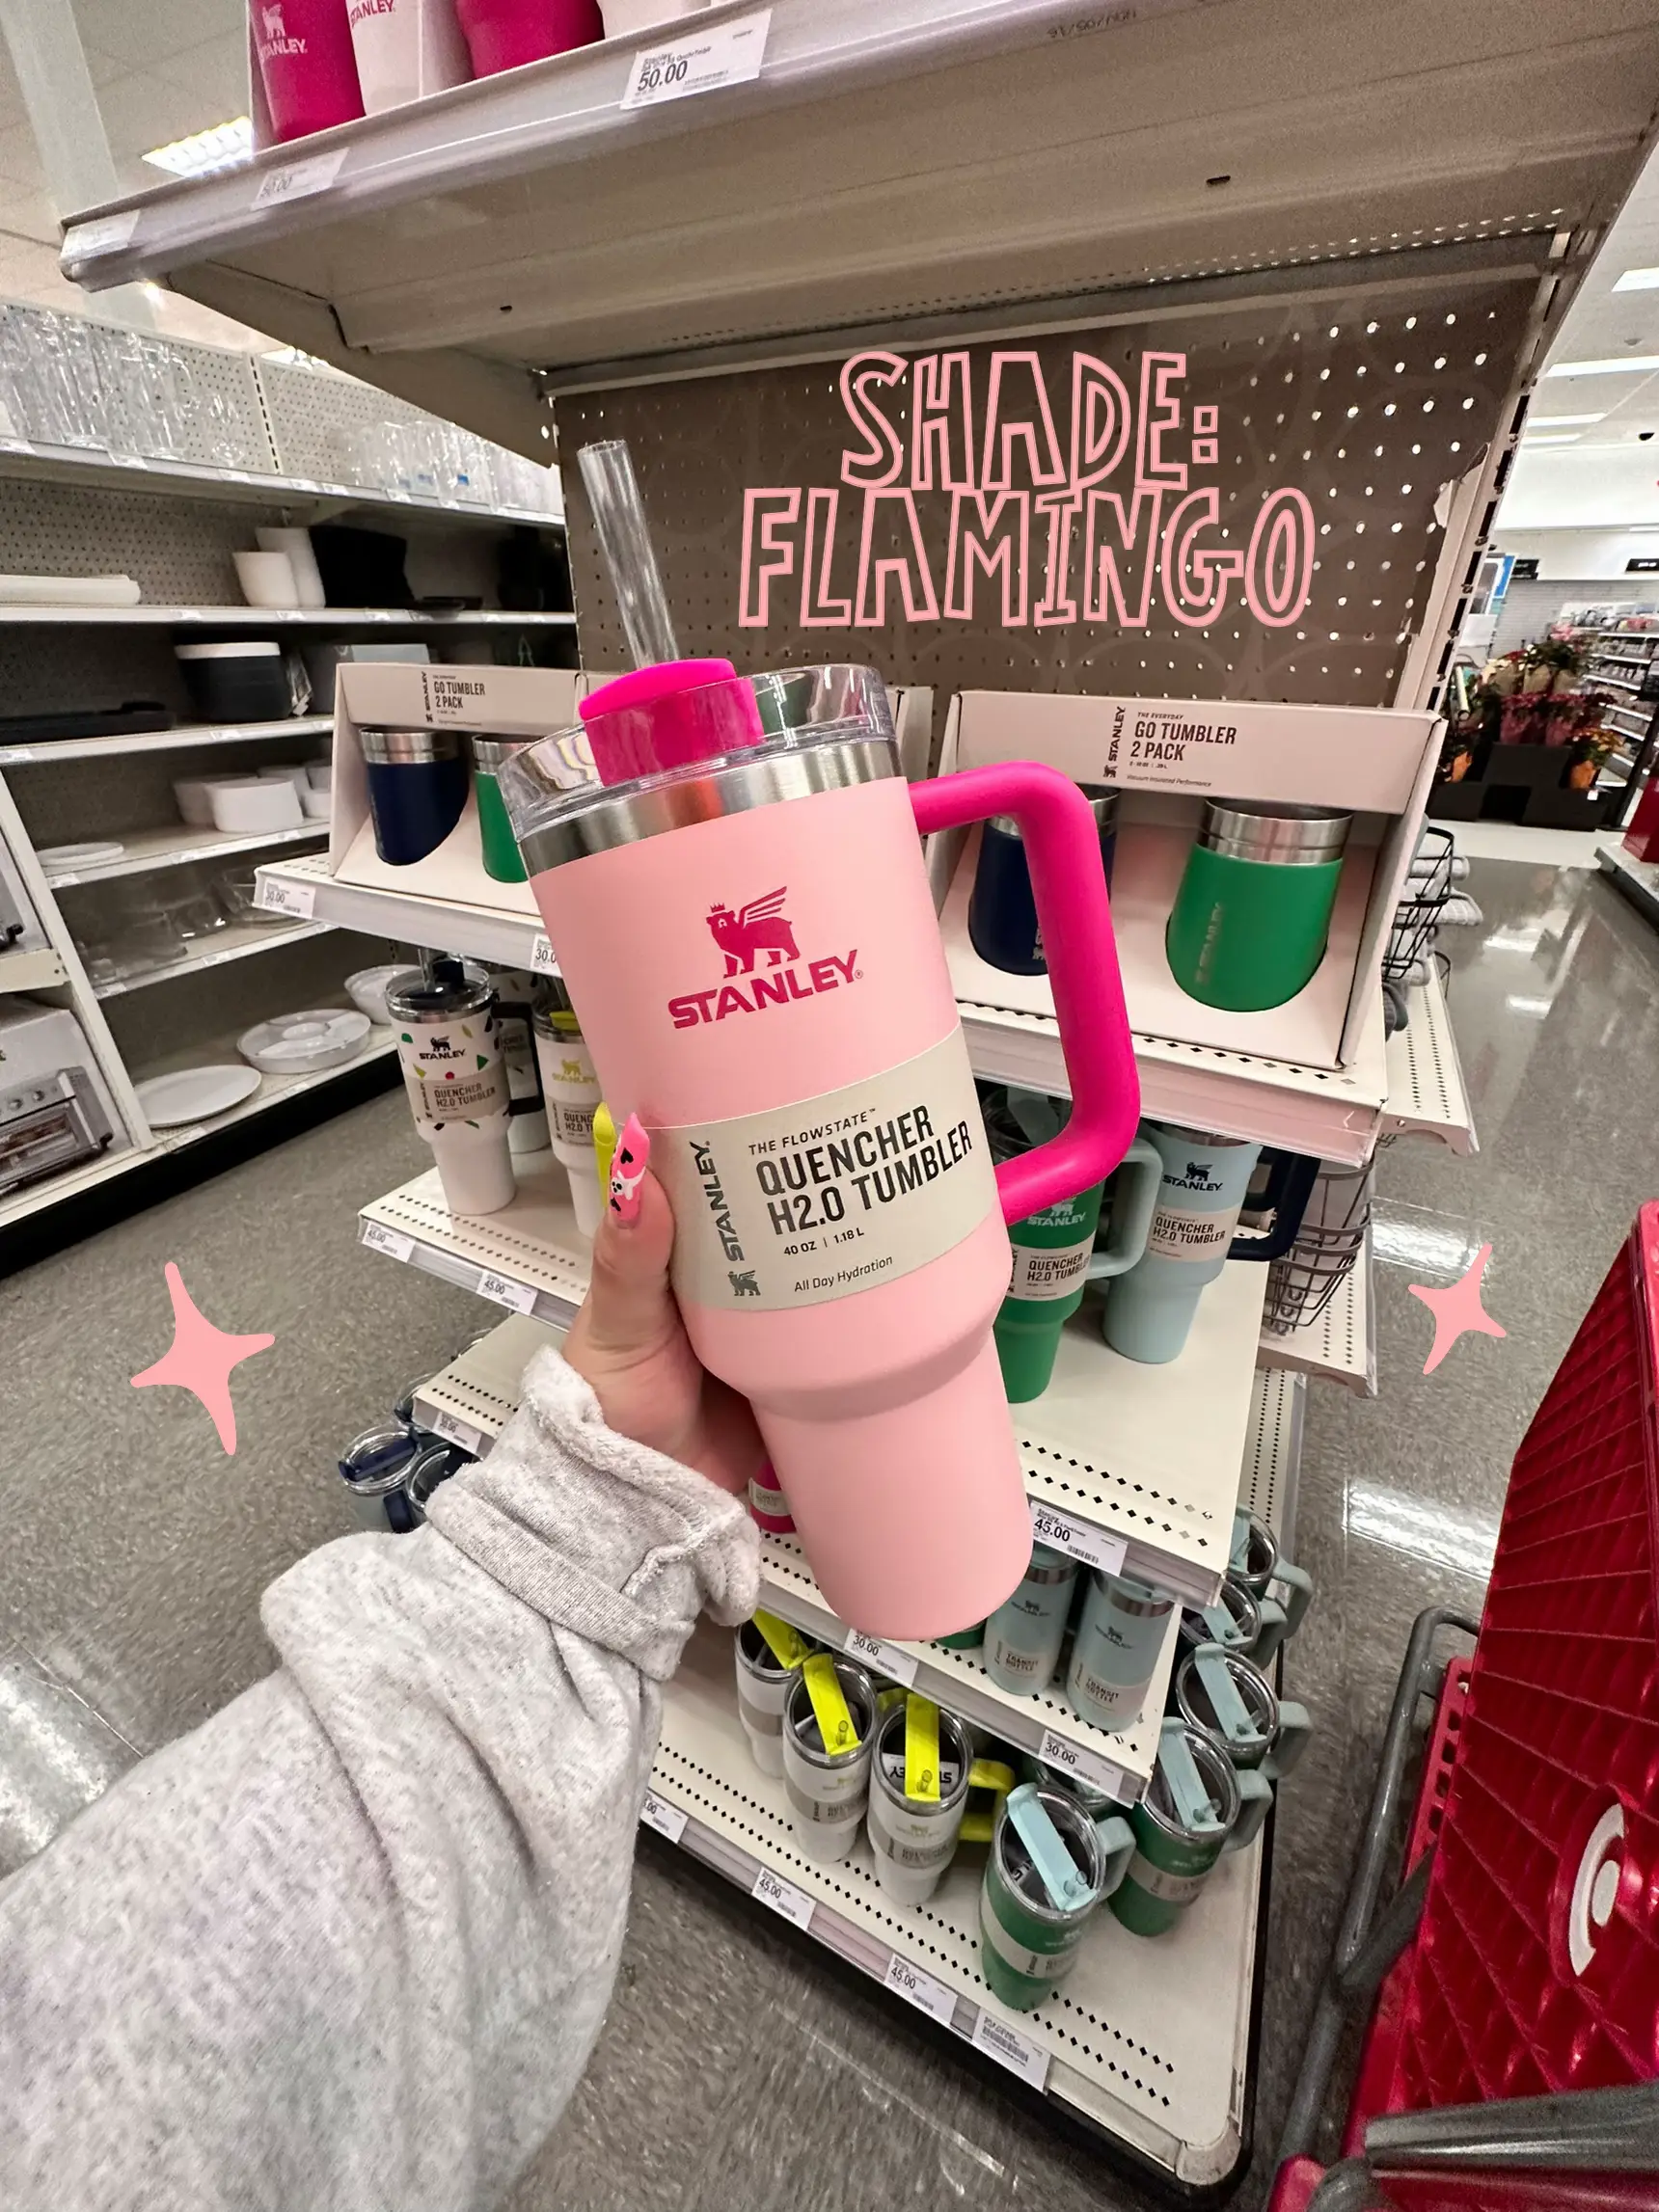 New stanley in flamingo..target exclusive #stanley